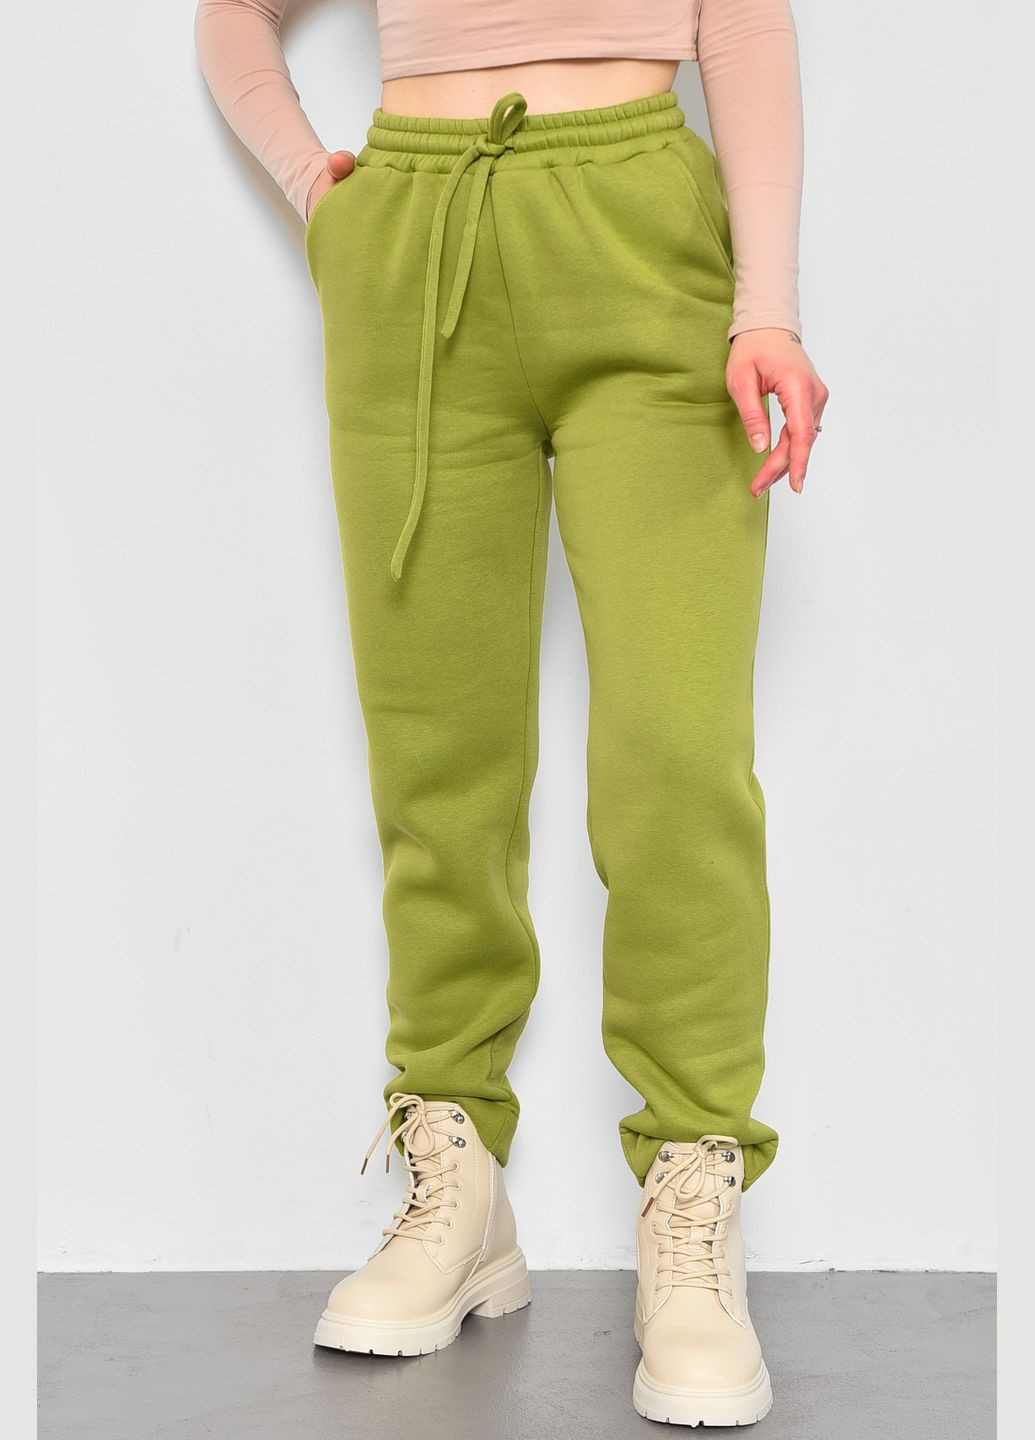 Спортивные штаны женские на флисе салатового цвета Let's Shop (283322876)